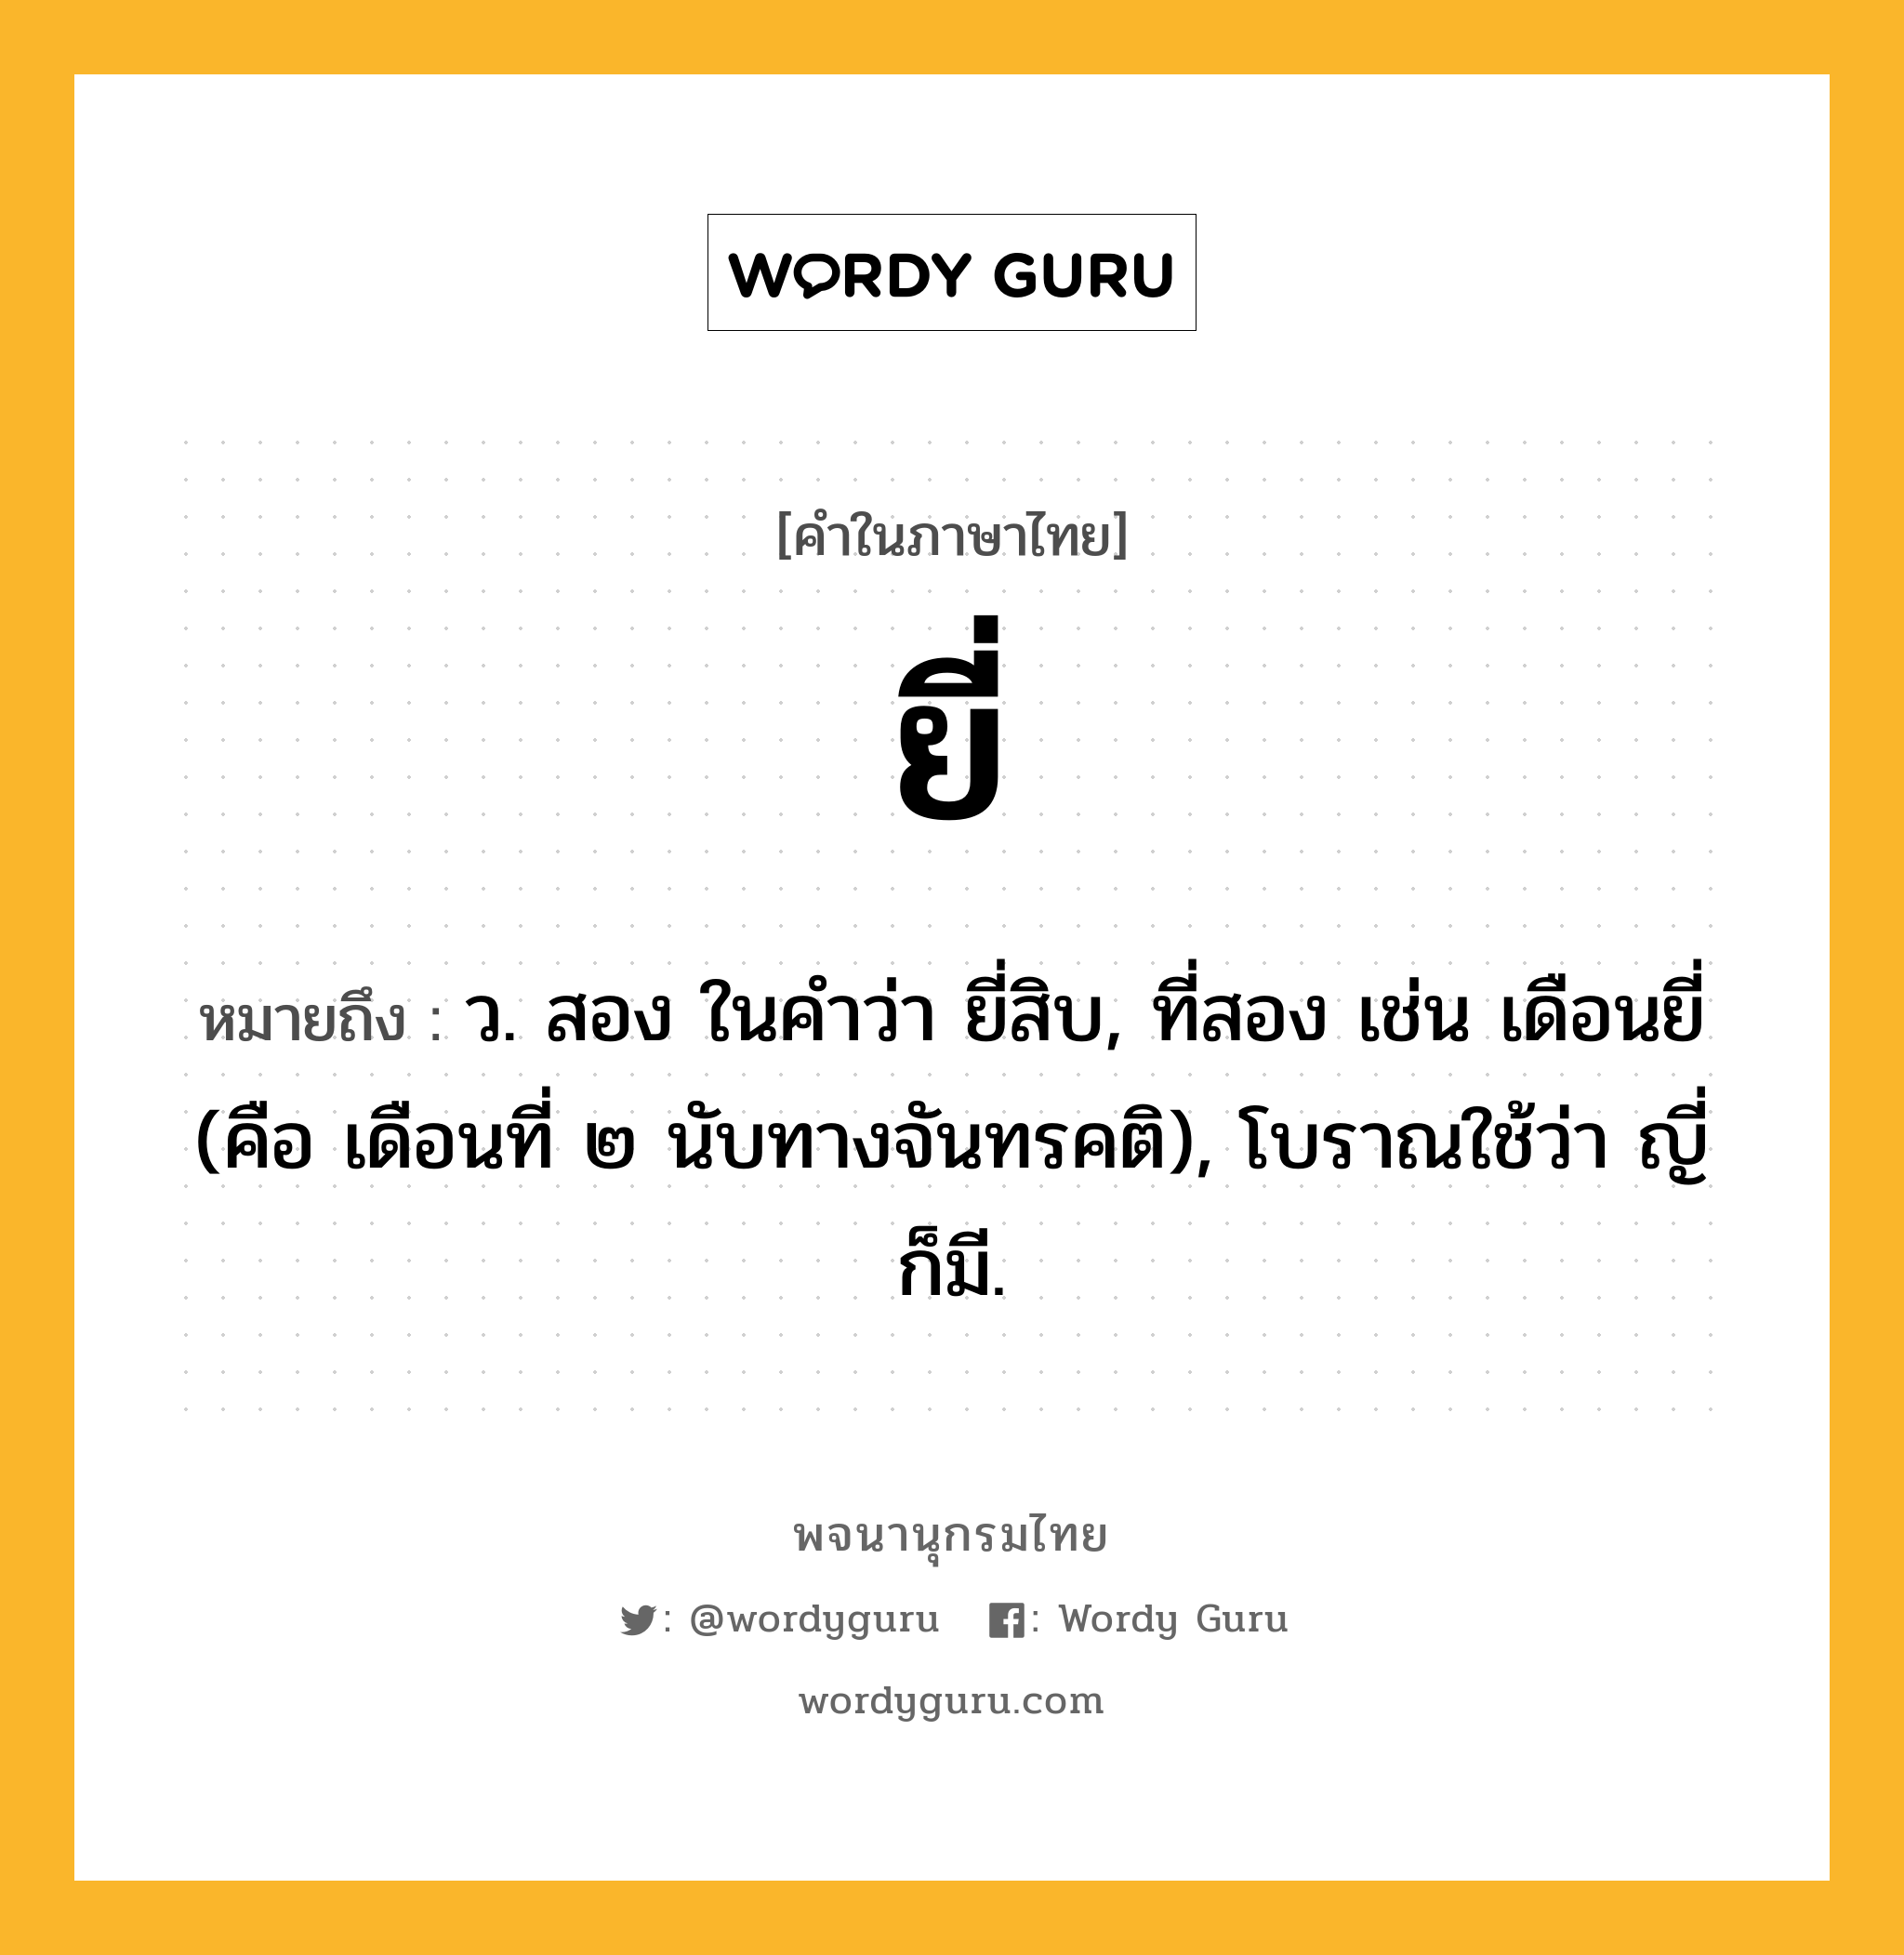 ยี่ หมายถึงอะไร?, คำในภาษาไทย ยี่ หมายถึง ว. สอง ในคำว่า ยี่สิบ, ที่สอง เช่น เดือนยี่ (คือ เดือนที่ ๒ นับทางจันทรคติ), โบราณใช้ว่า ญี่ ก็มี.